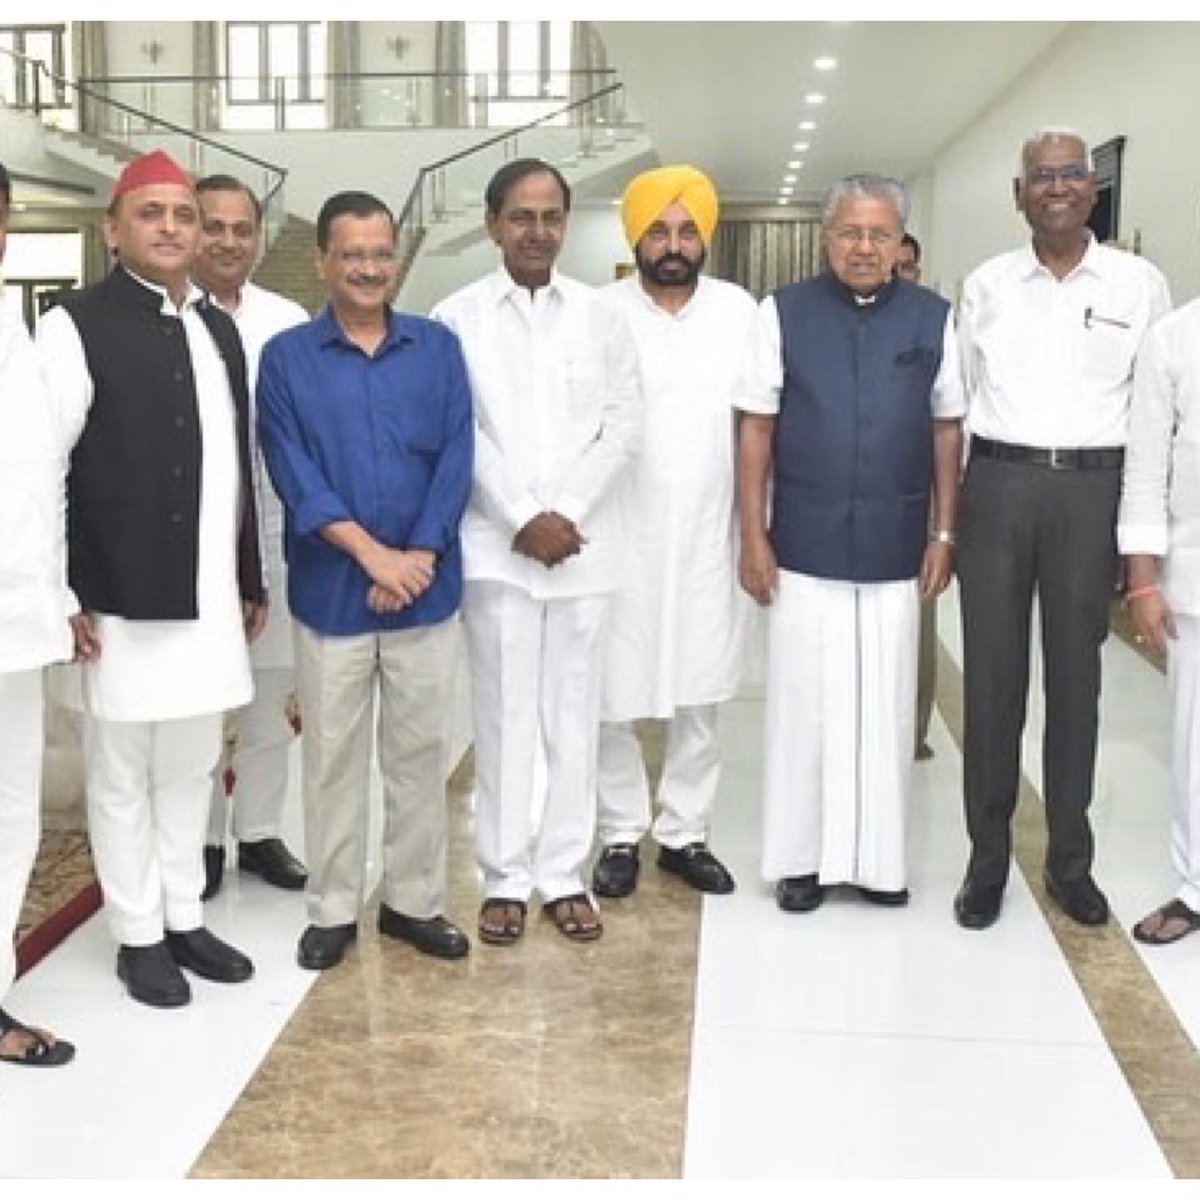 CPI GS D. Raja, Kerala CM Pinarayi Vijayan, Delhi CM Arvind Kejariwal, Punjab CM Bhagwant Mann and Samajwadi Party President Akhilesh Yadav were welcomed by Telangana CM K. Chandrashekhar Rao and other leaders of the Bharat Rasthra Samithi party in Khammam, Telangana.